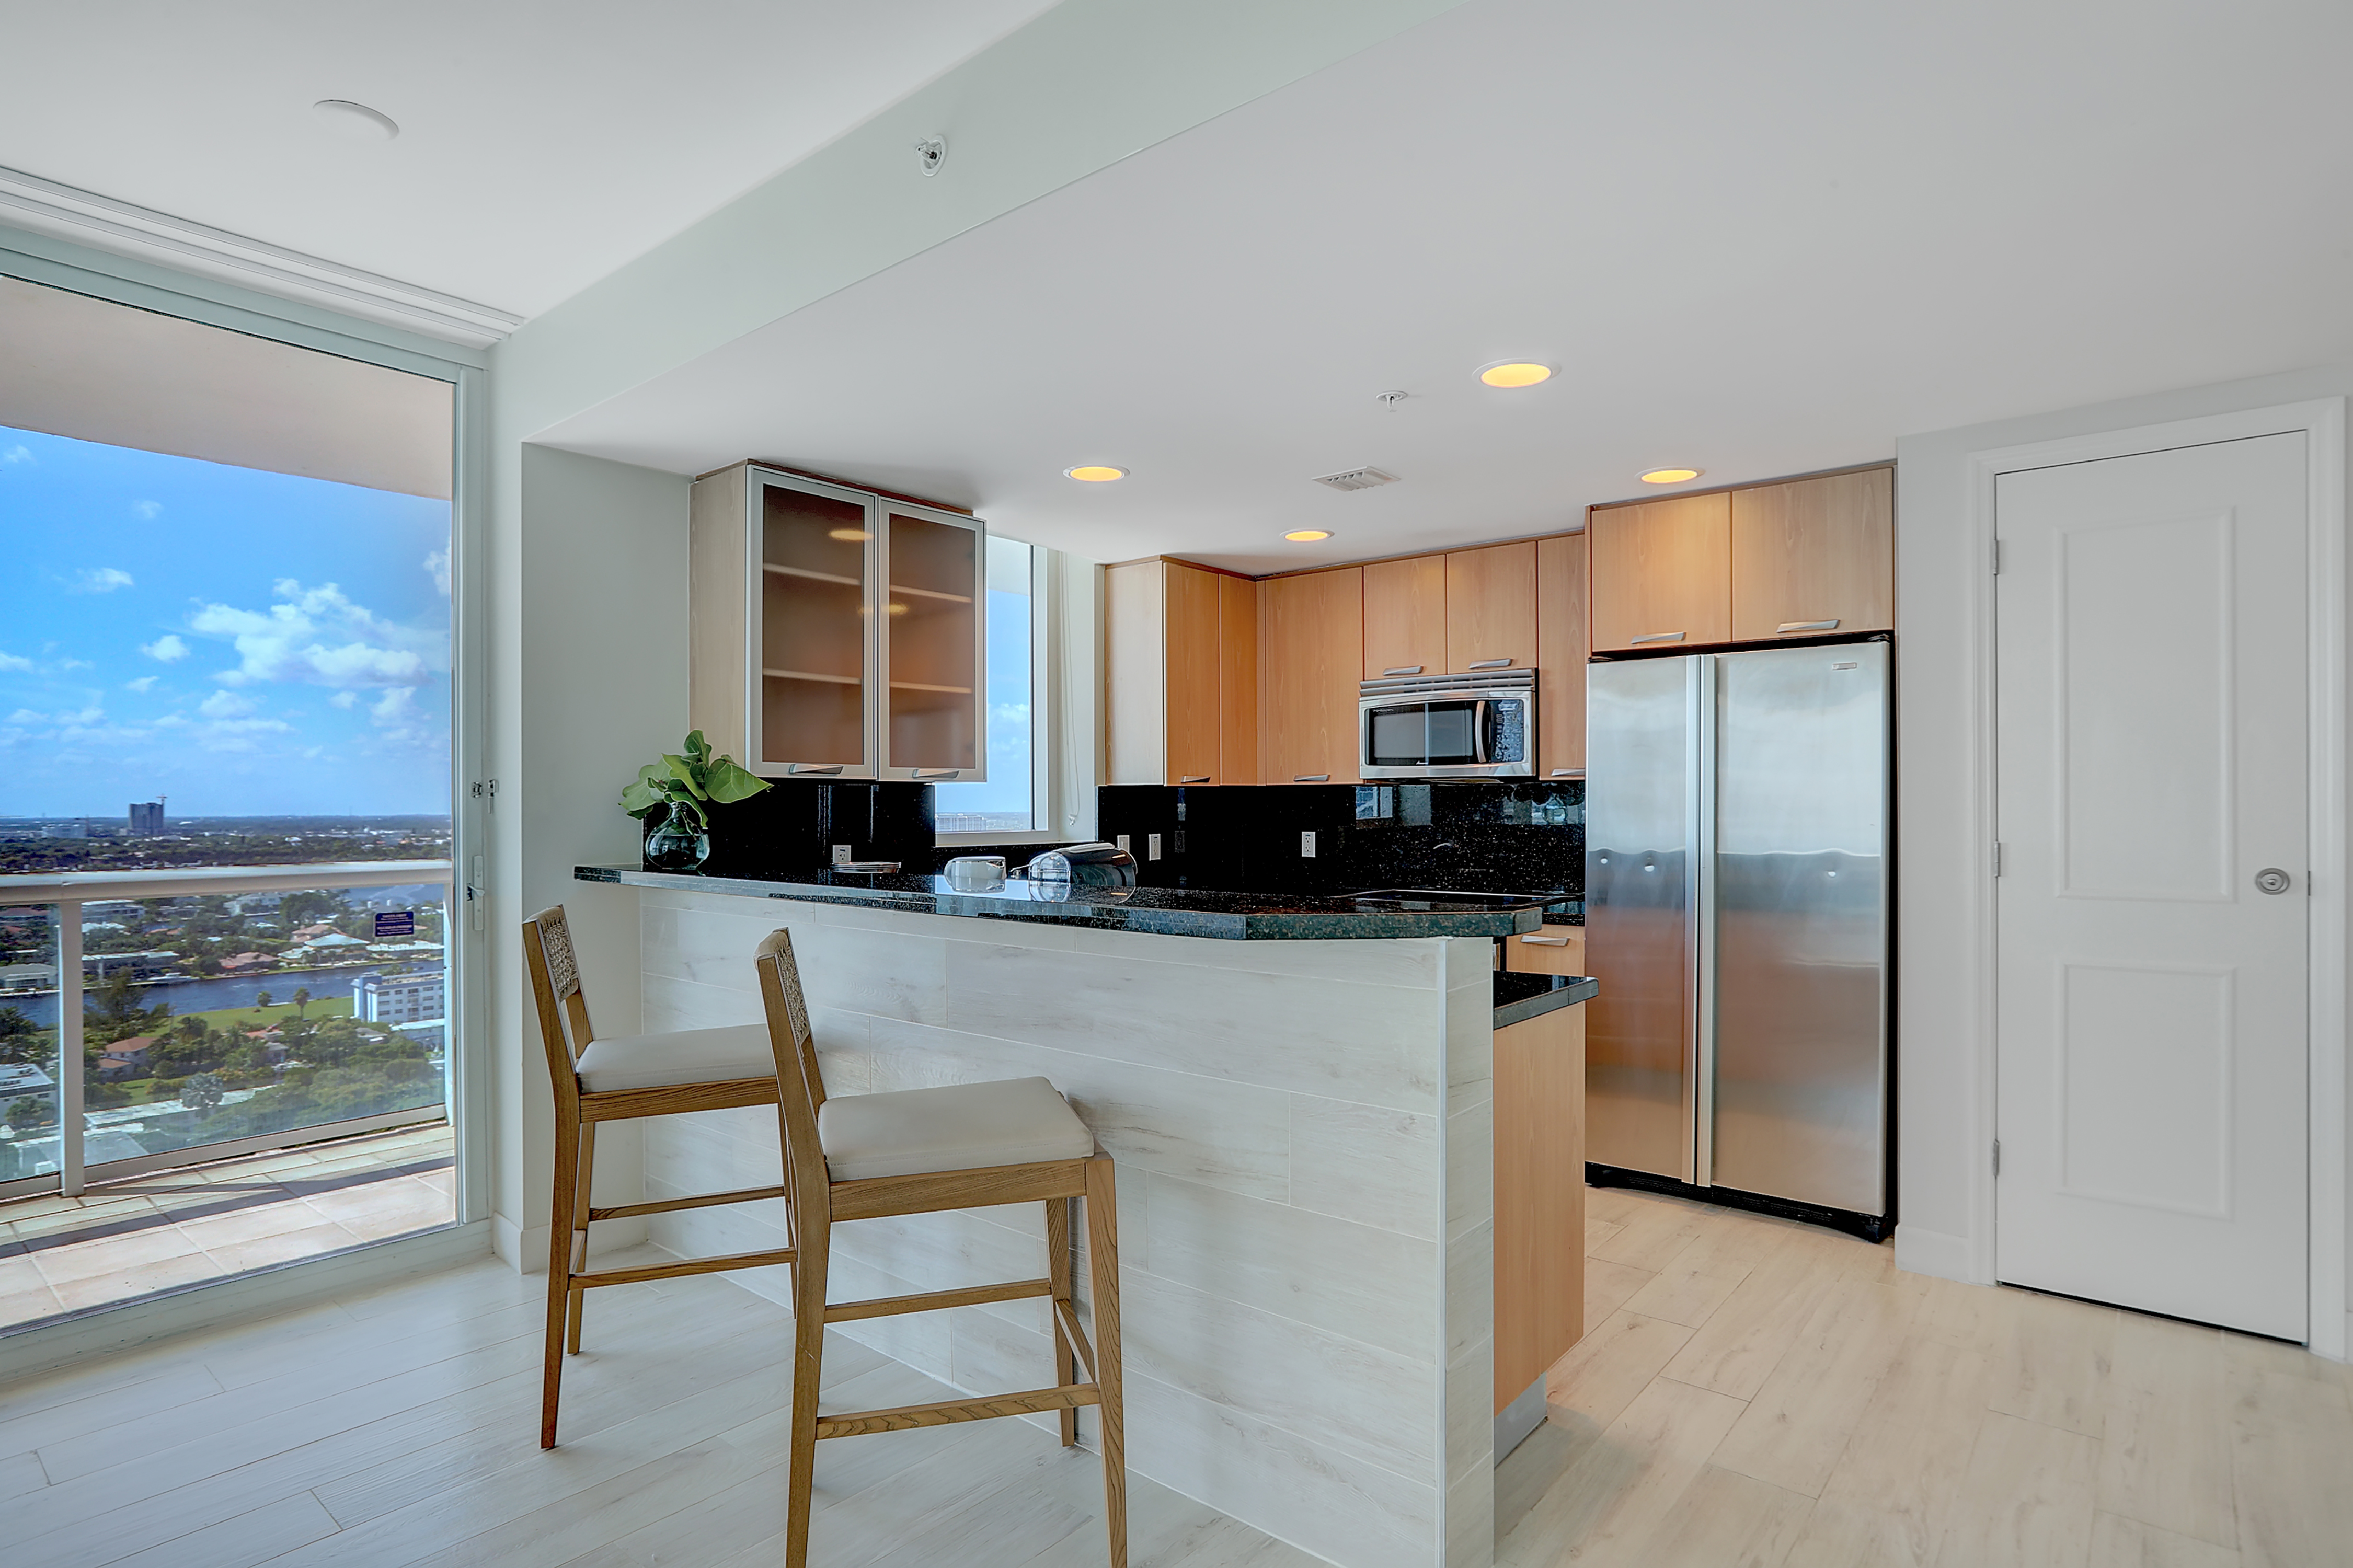 Kitchen Area of Ocean View Suite